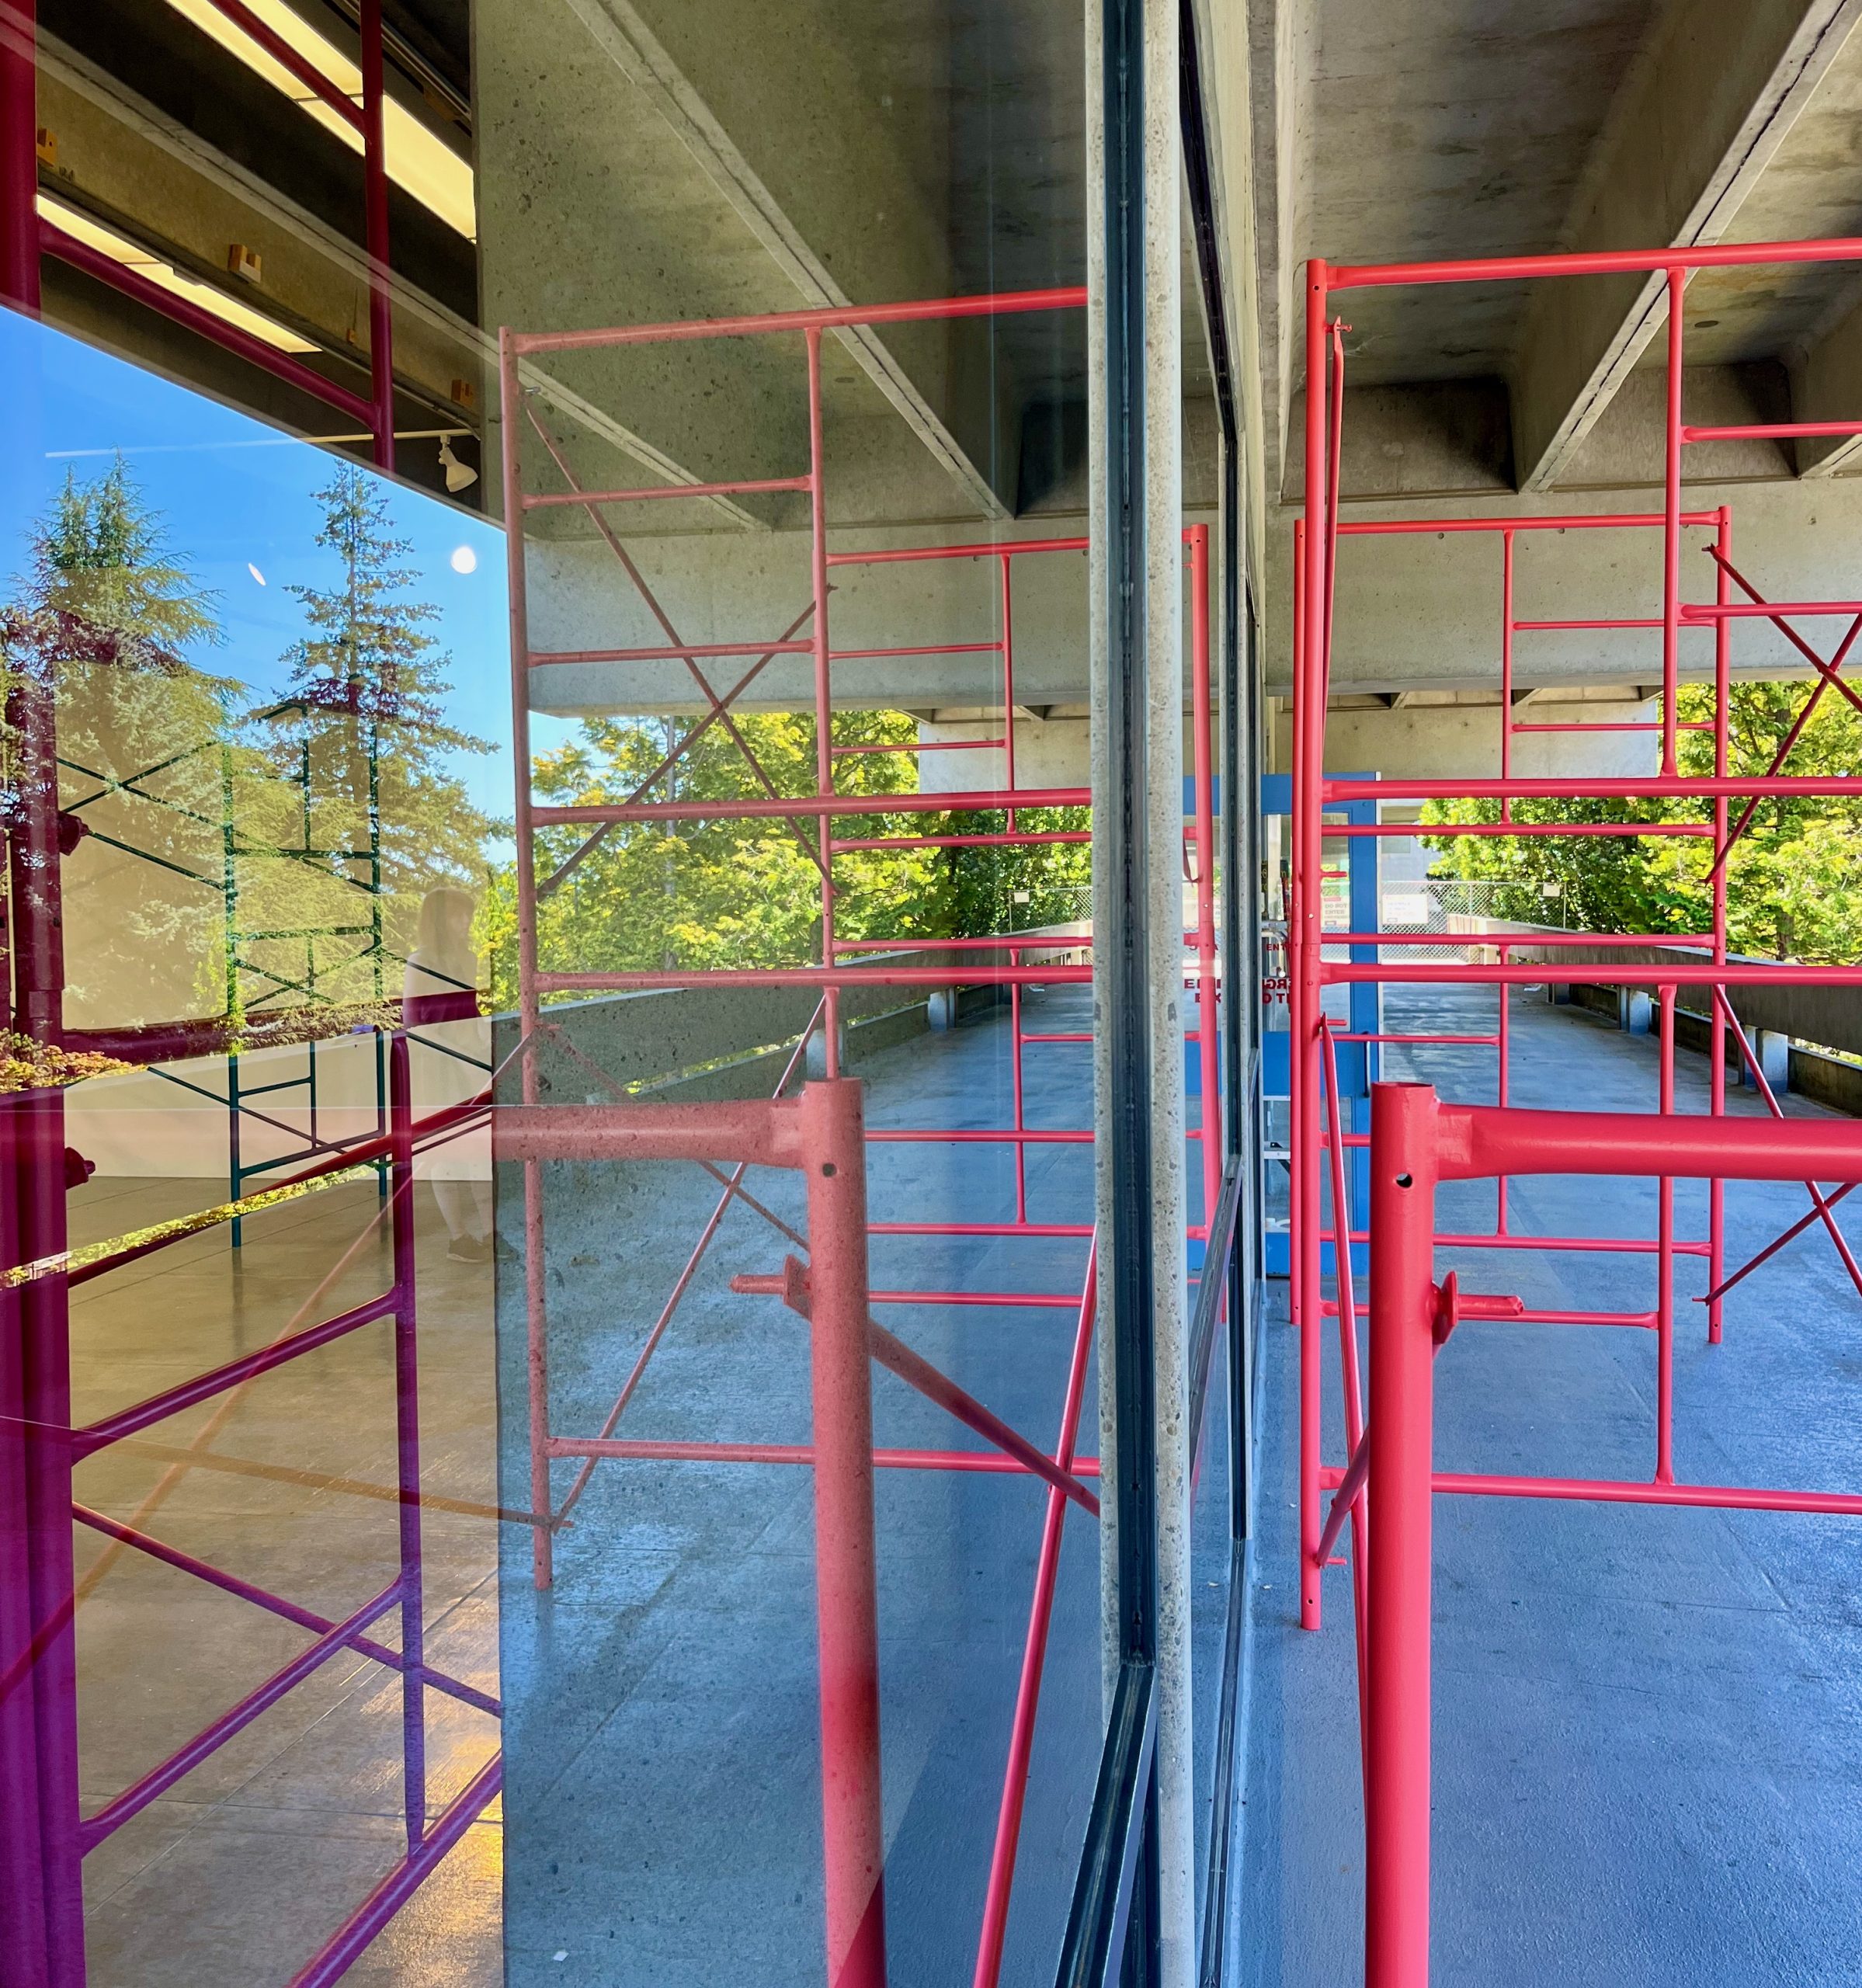 Pink scaffolding outside near the gallery window.